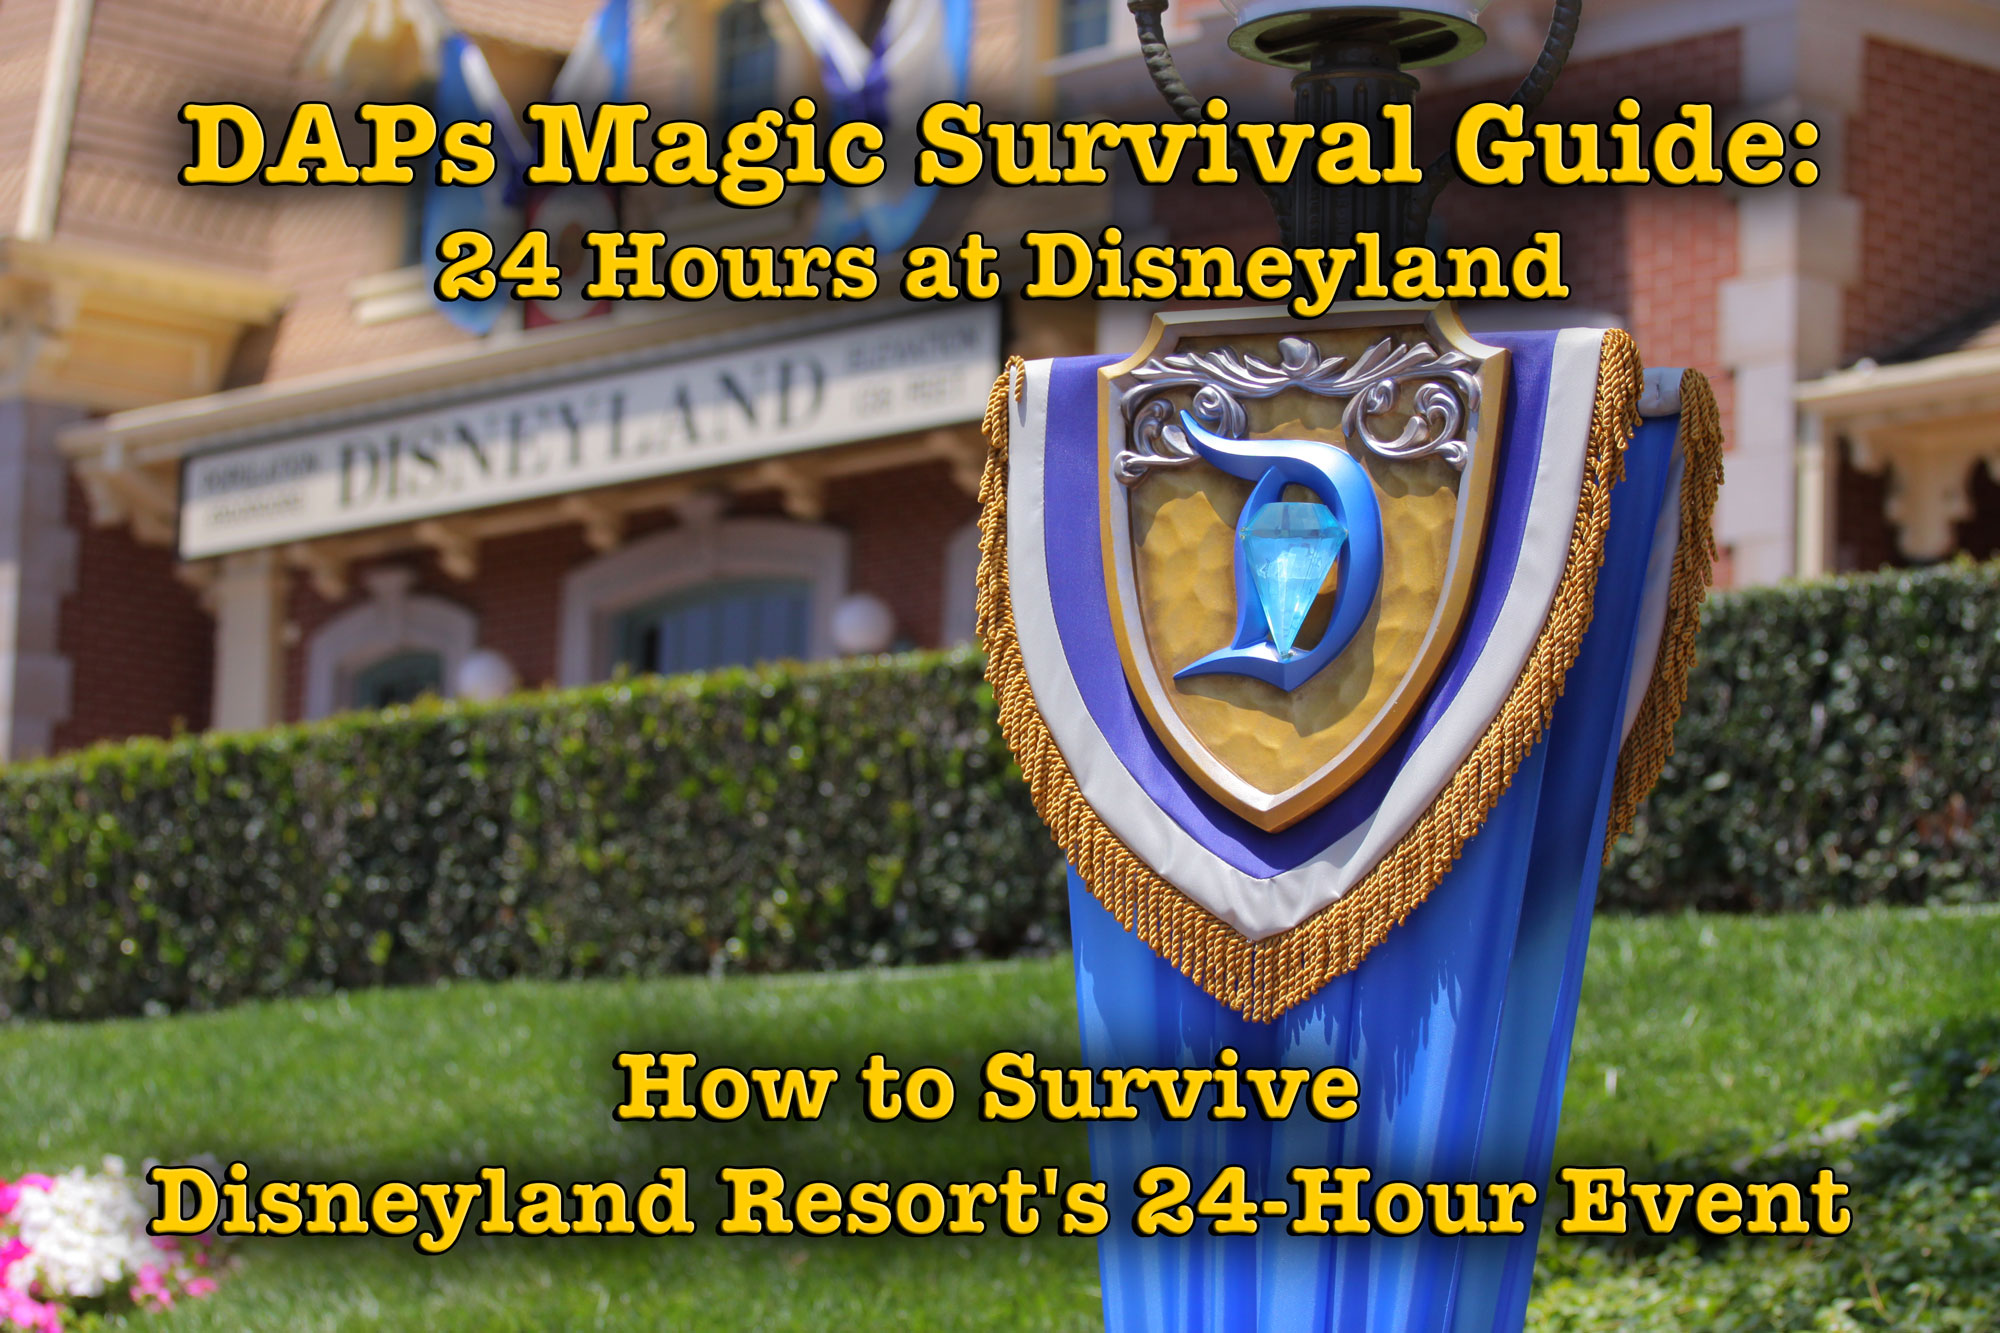 How to Survive Disneyland Resort’s 24-Hour Event